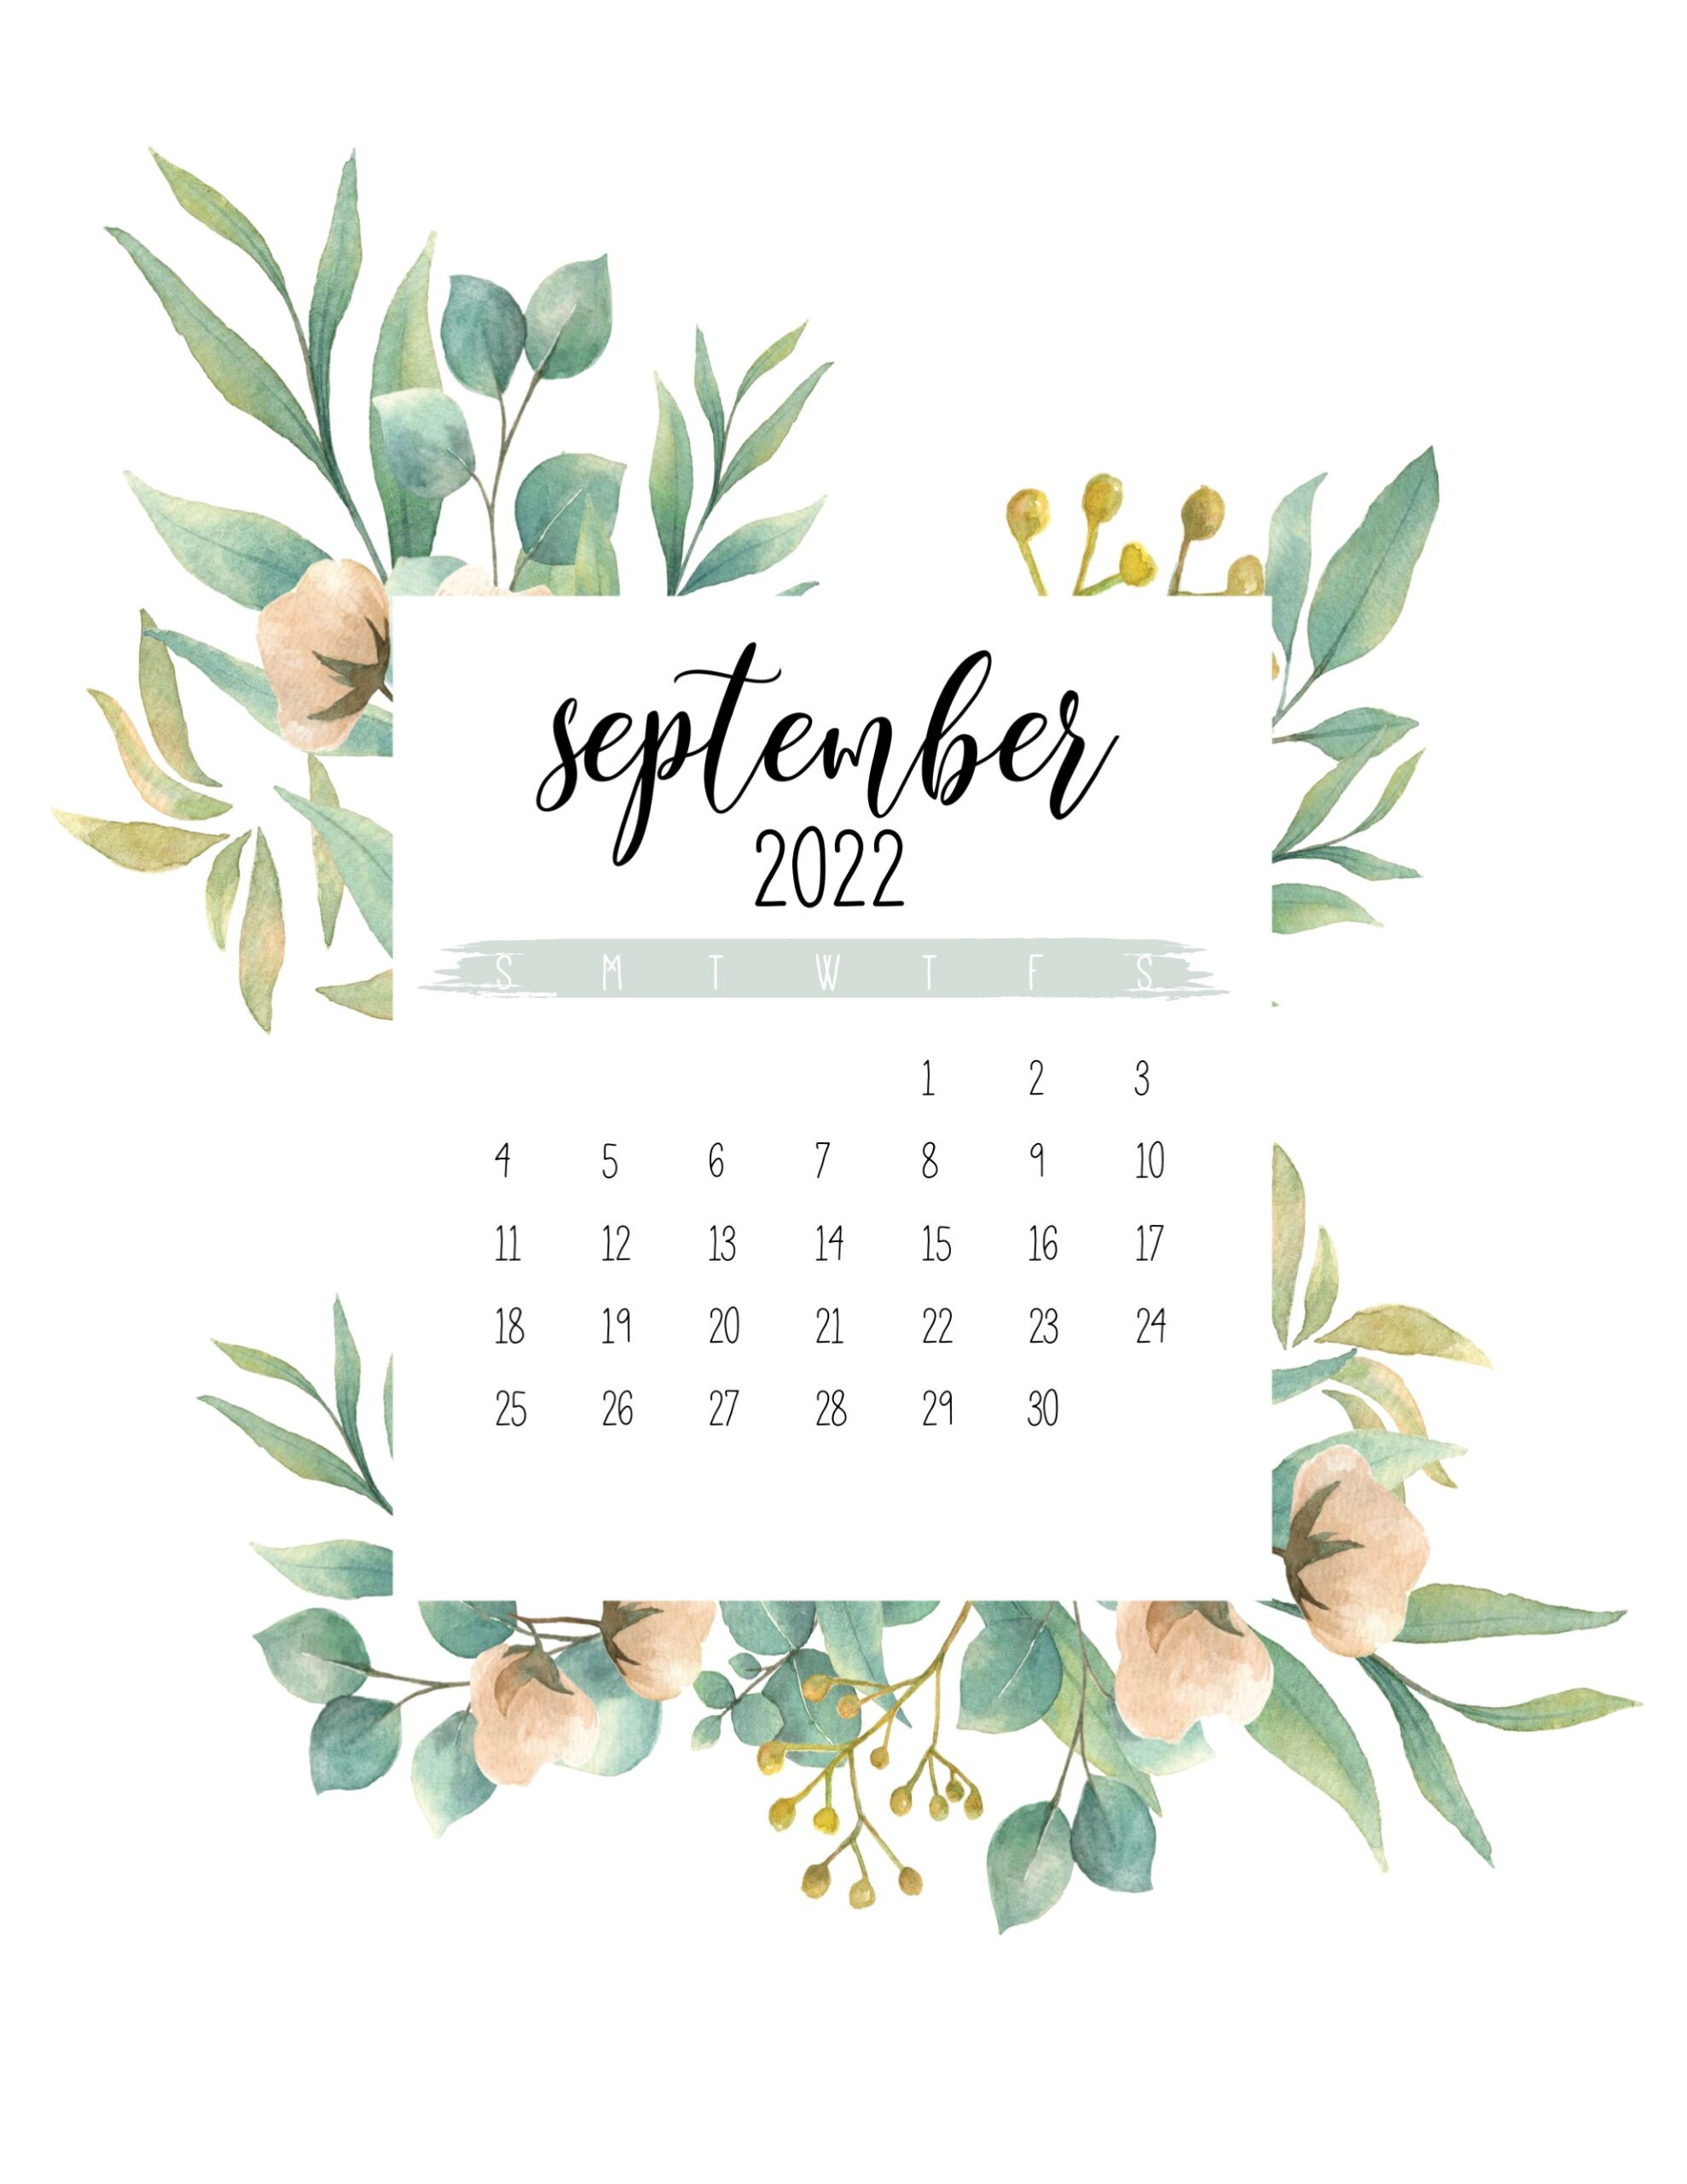 September 2022 Calendar Wallpaper.Free Printable September 2022 Calendars World Of Printables